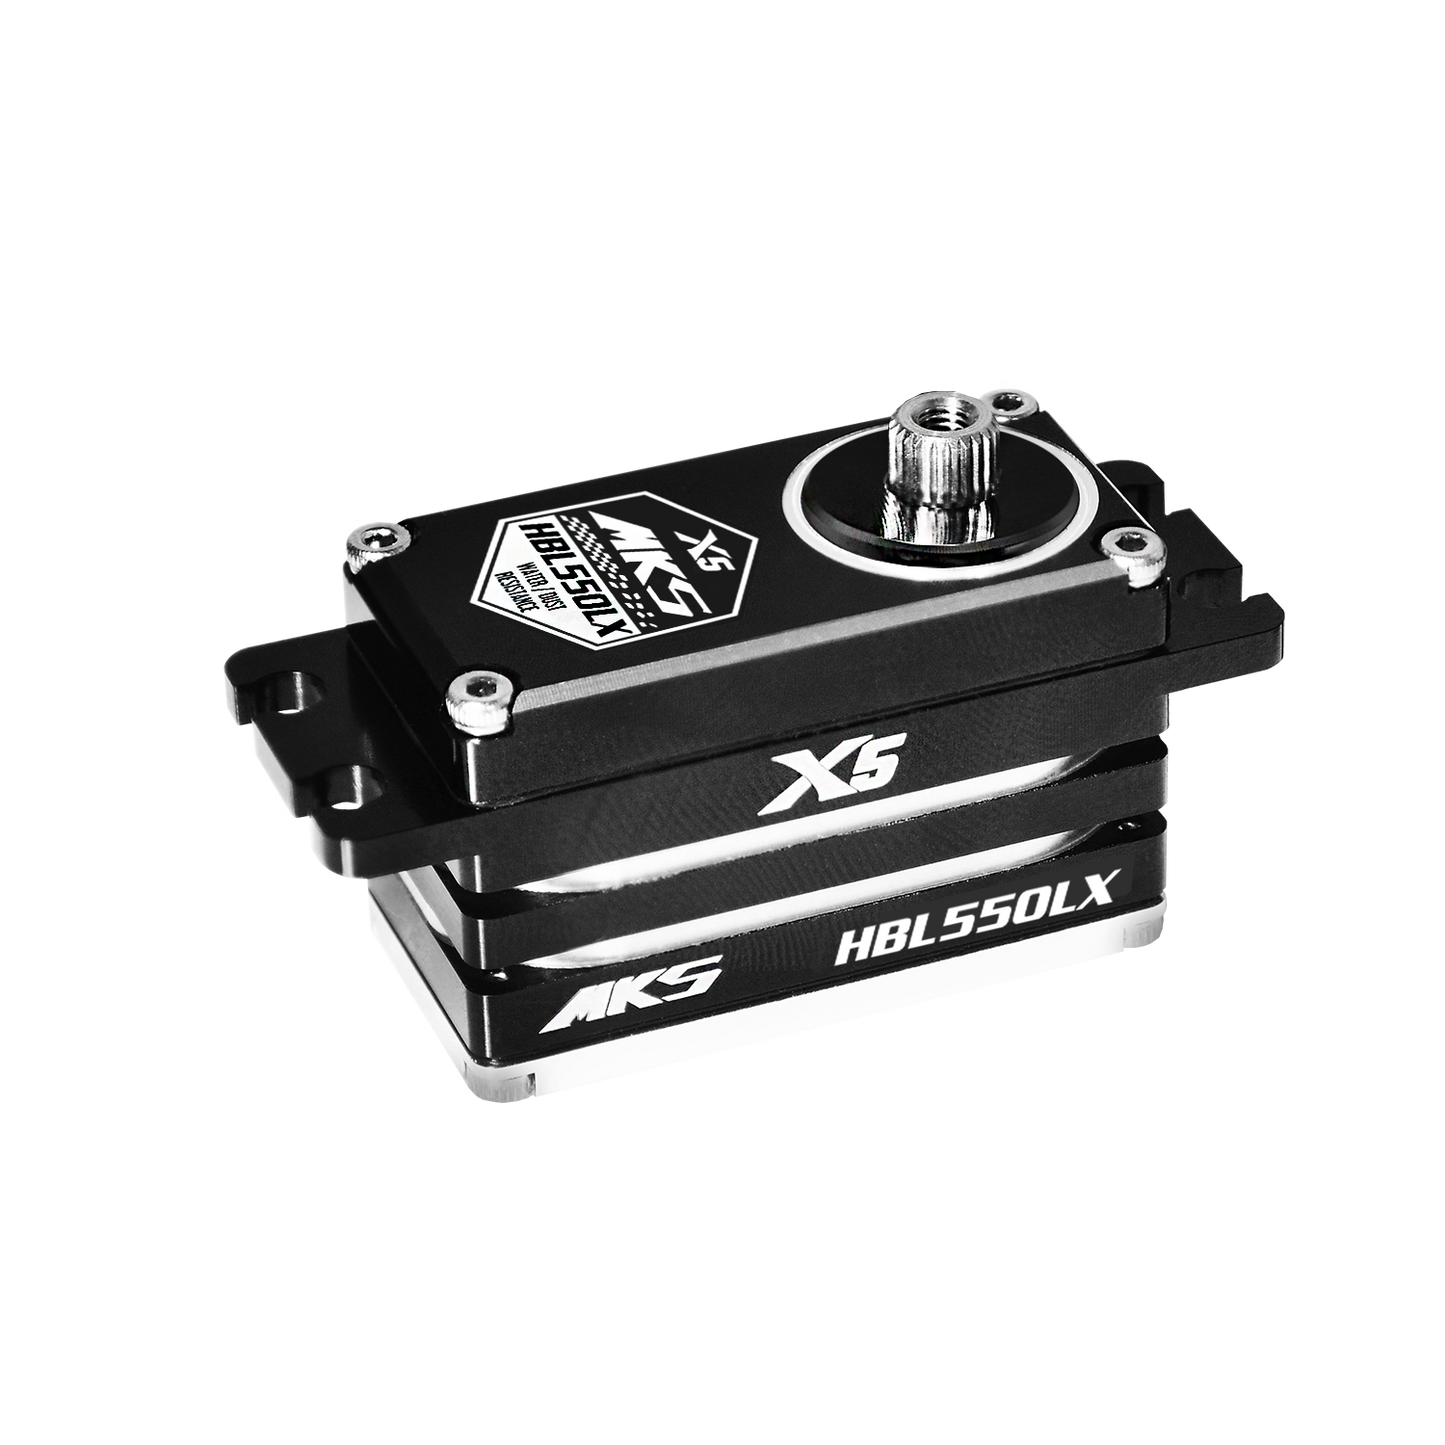 X5 HBL550LX MKS Brushless Titanium Gear Low Profile Digital Servo (High Voltage)